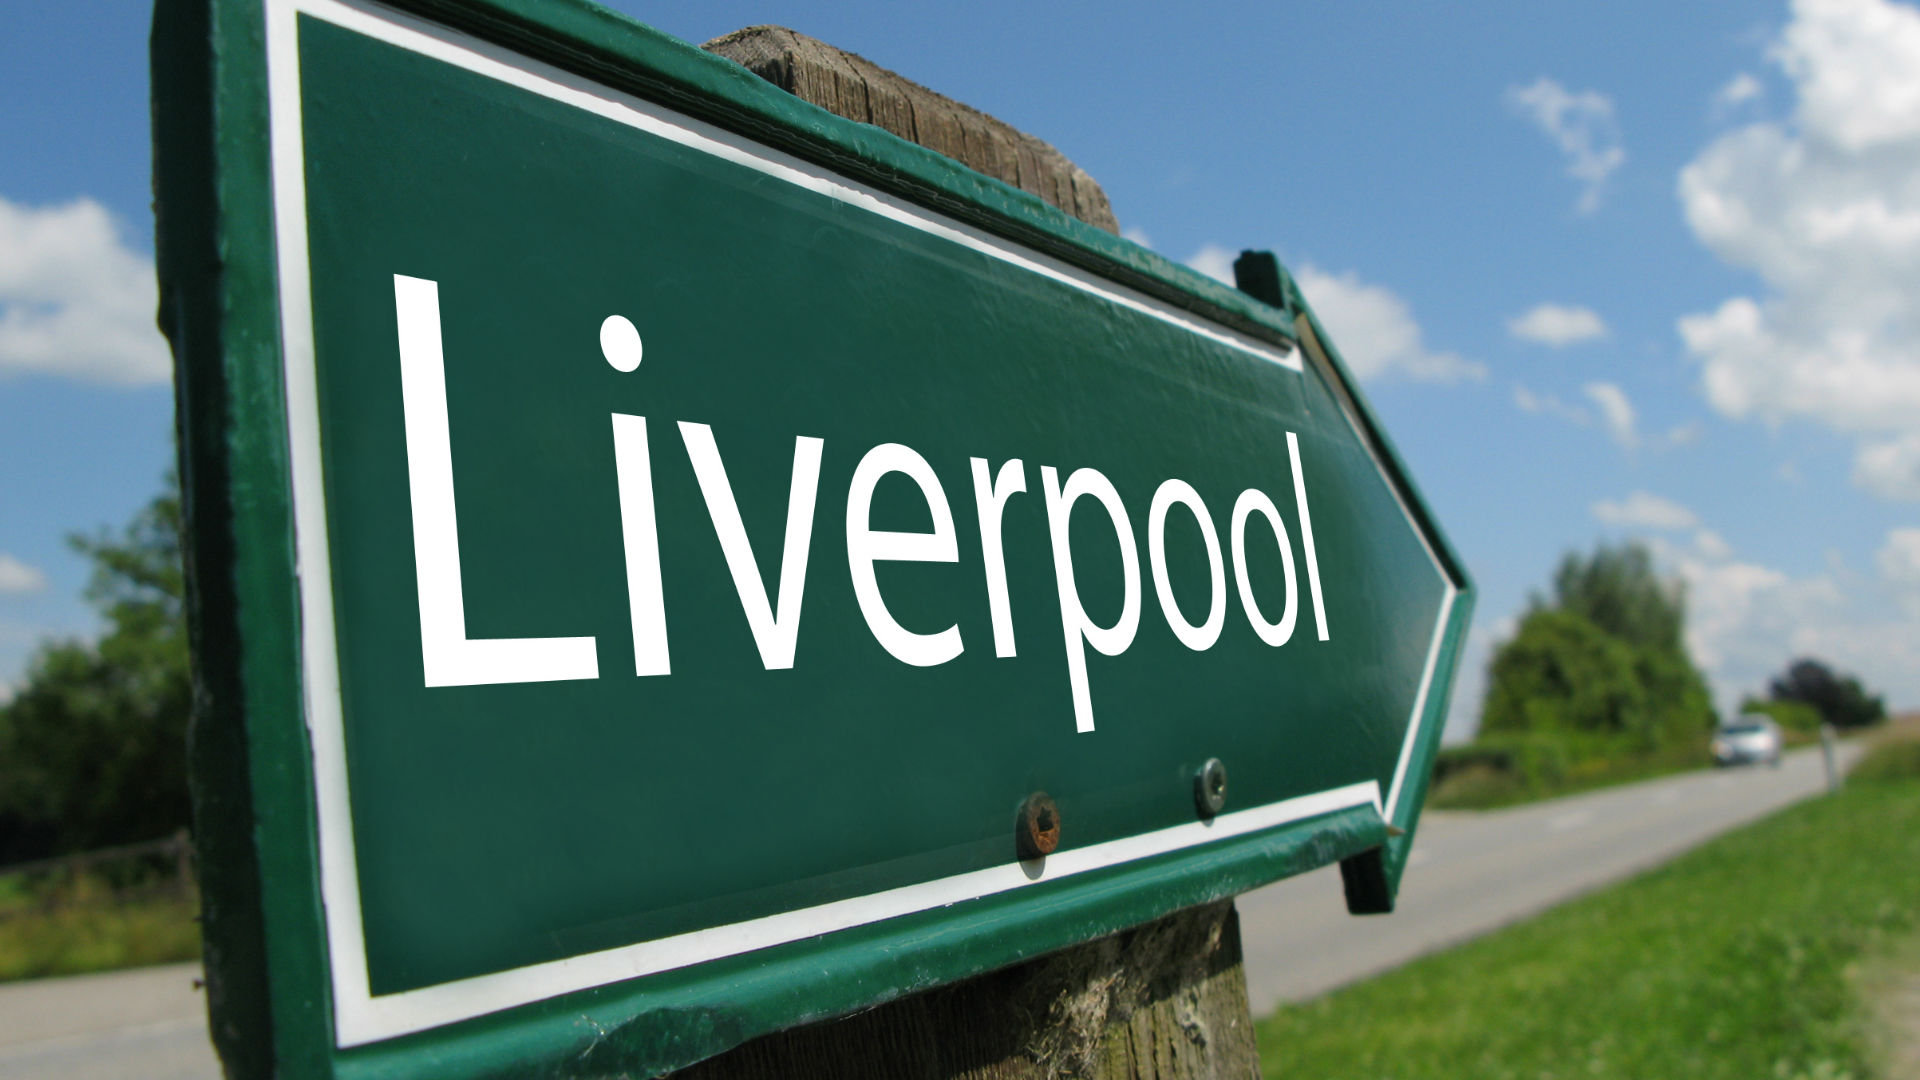 A Liverpool road sign